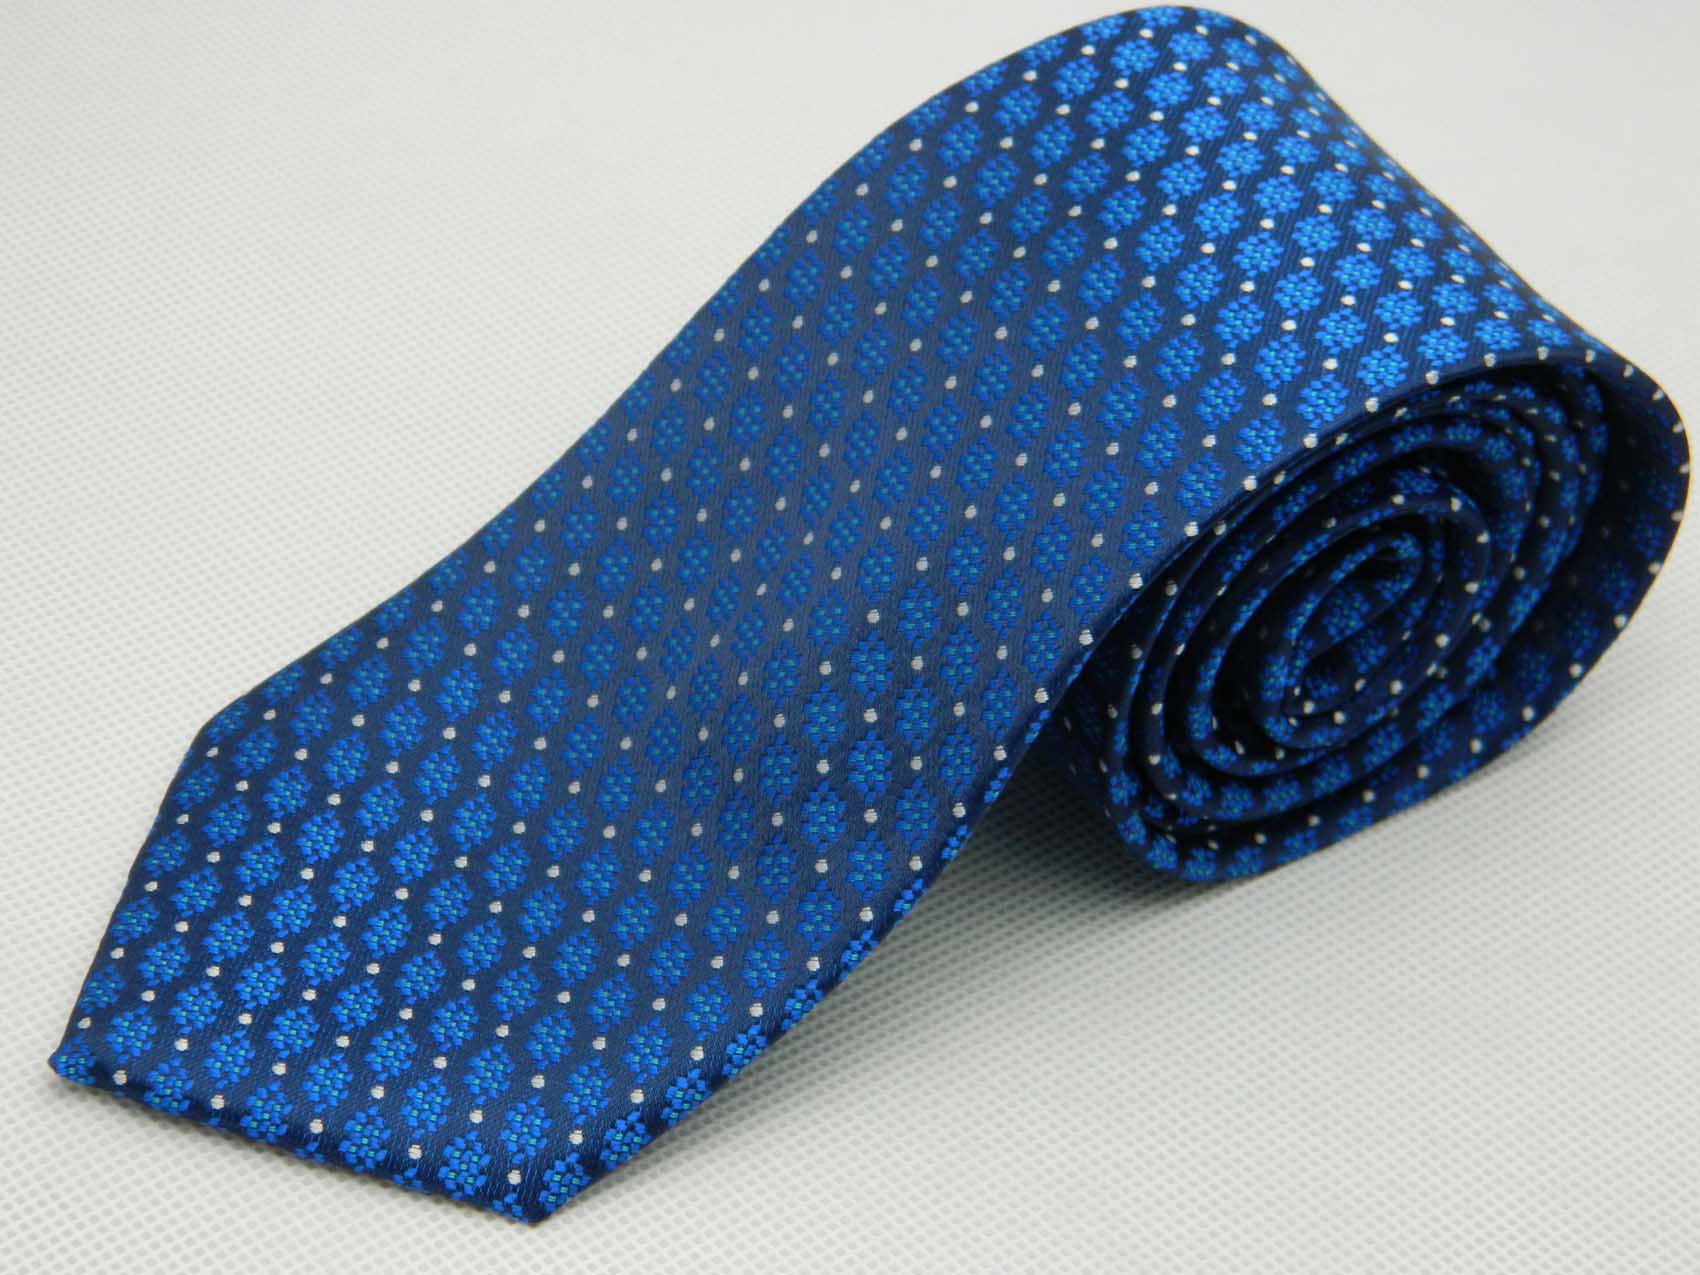 北京领带厂订做北京领带、保安领带、军队领带